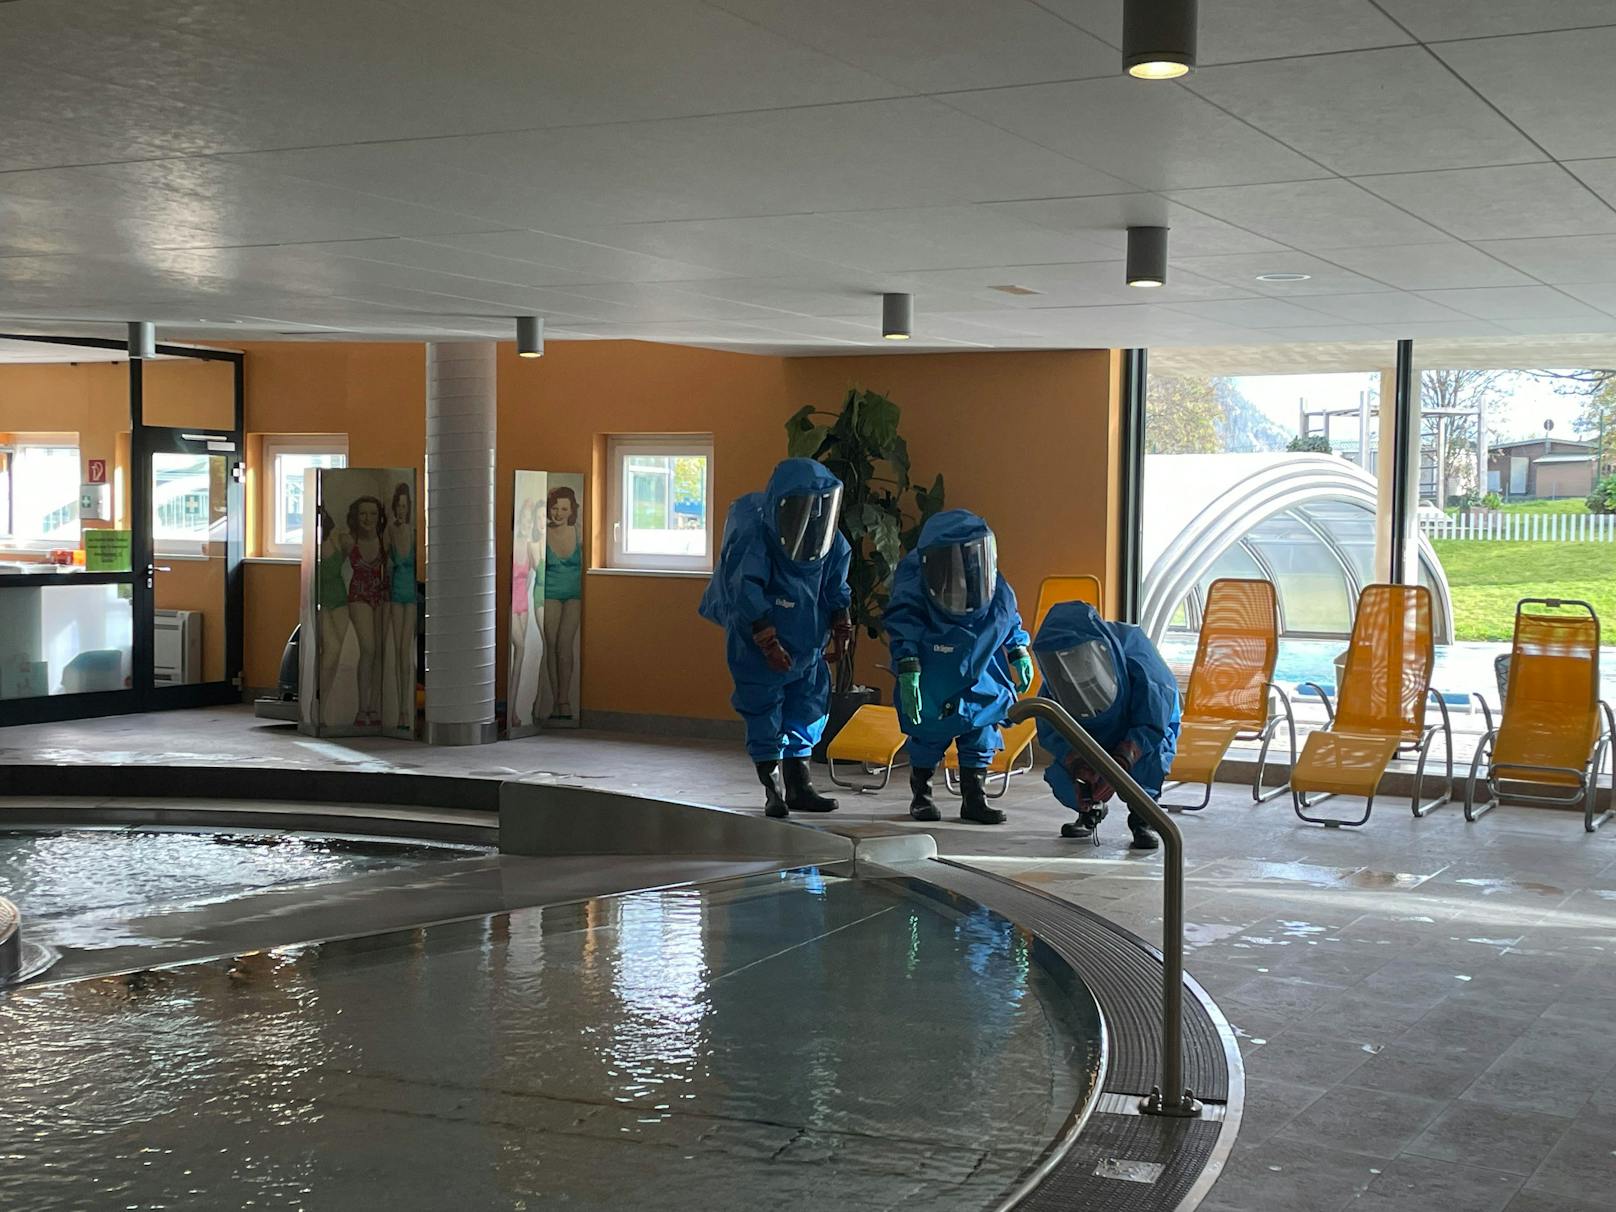 Ein Chlorgas-Austritt in einem Hallenbad im Tiroler Fügen hat mehrere Verletzte gefordert. Die Feuerwehr reagierte mit einem Großeinsatz.